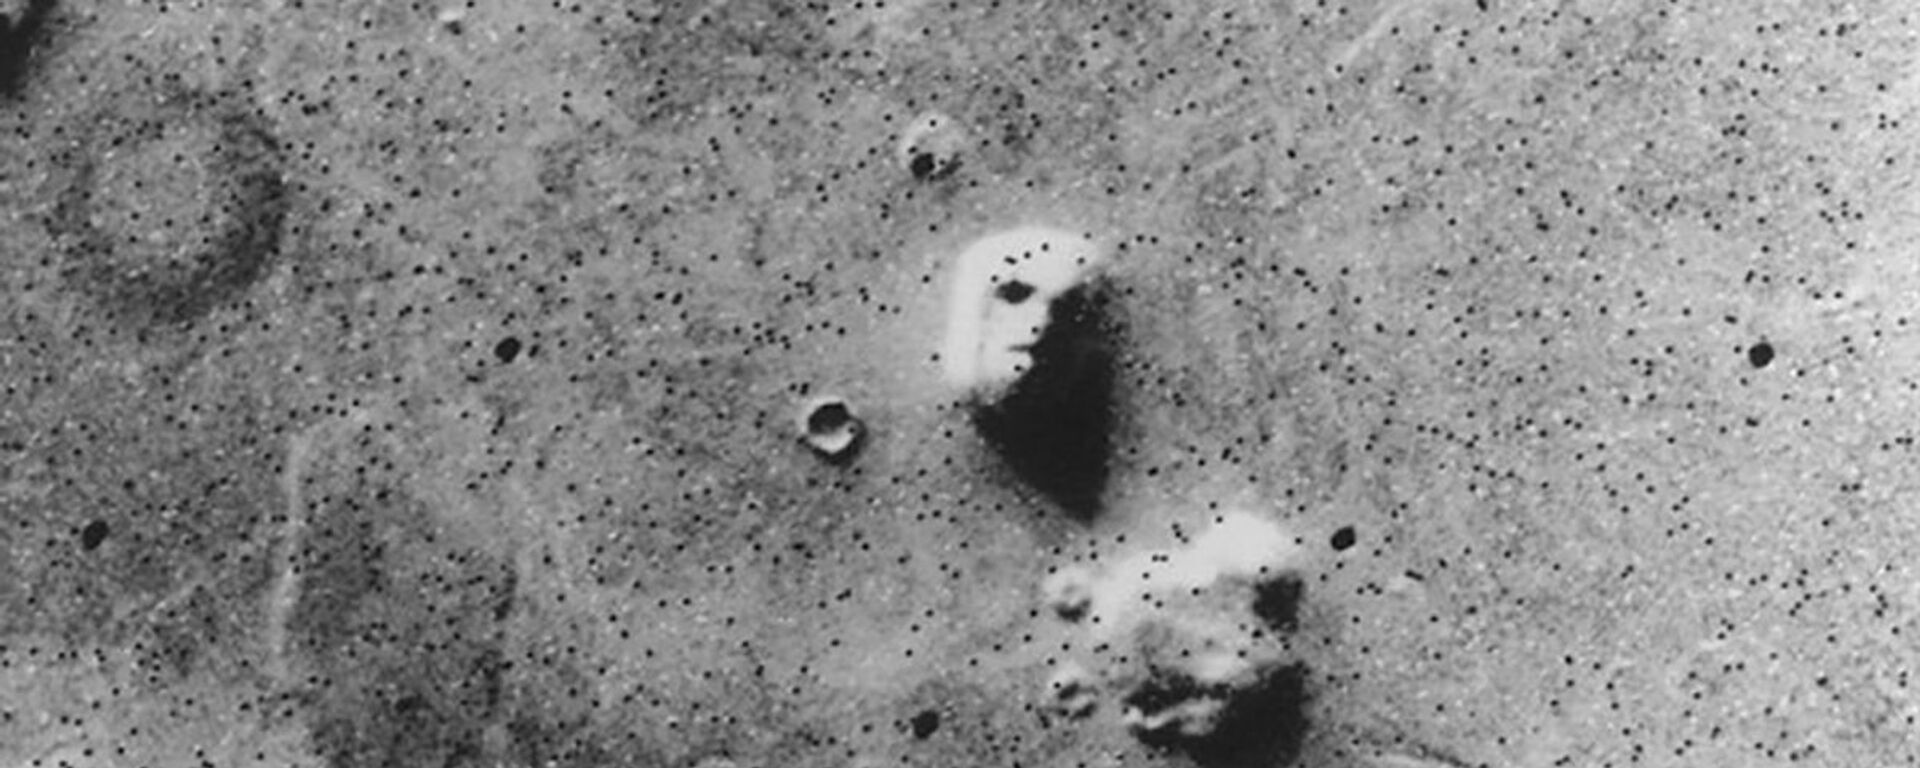 الصورة الشهيرة الوجه (The Face) - التقطتها المركبة الفضائية فايكينغ 1، وهي كانت أول مركبة فضائية أرسلت إلى المريخ كجزء من برنامج فايكينغ لوكالة الفضاء الأمريكية ناسا في 25 يوليو/ تموز 1976 - سبوتنيك عربي, 1920, 26.06.2022